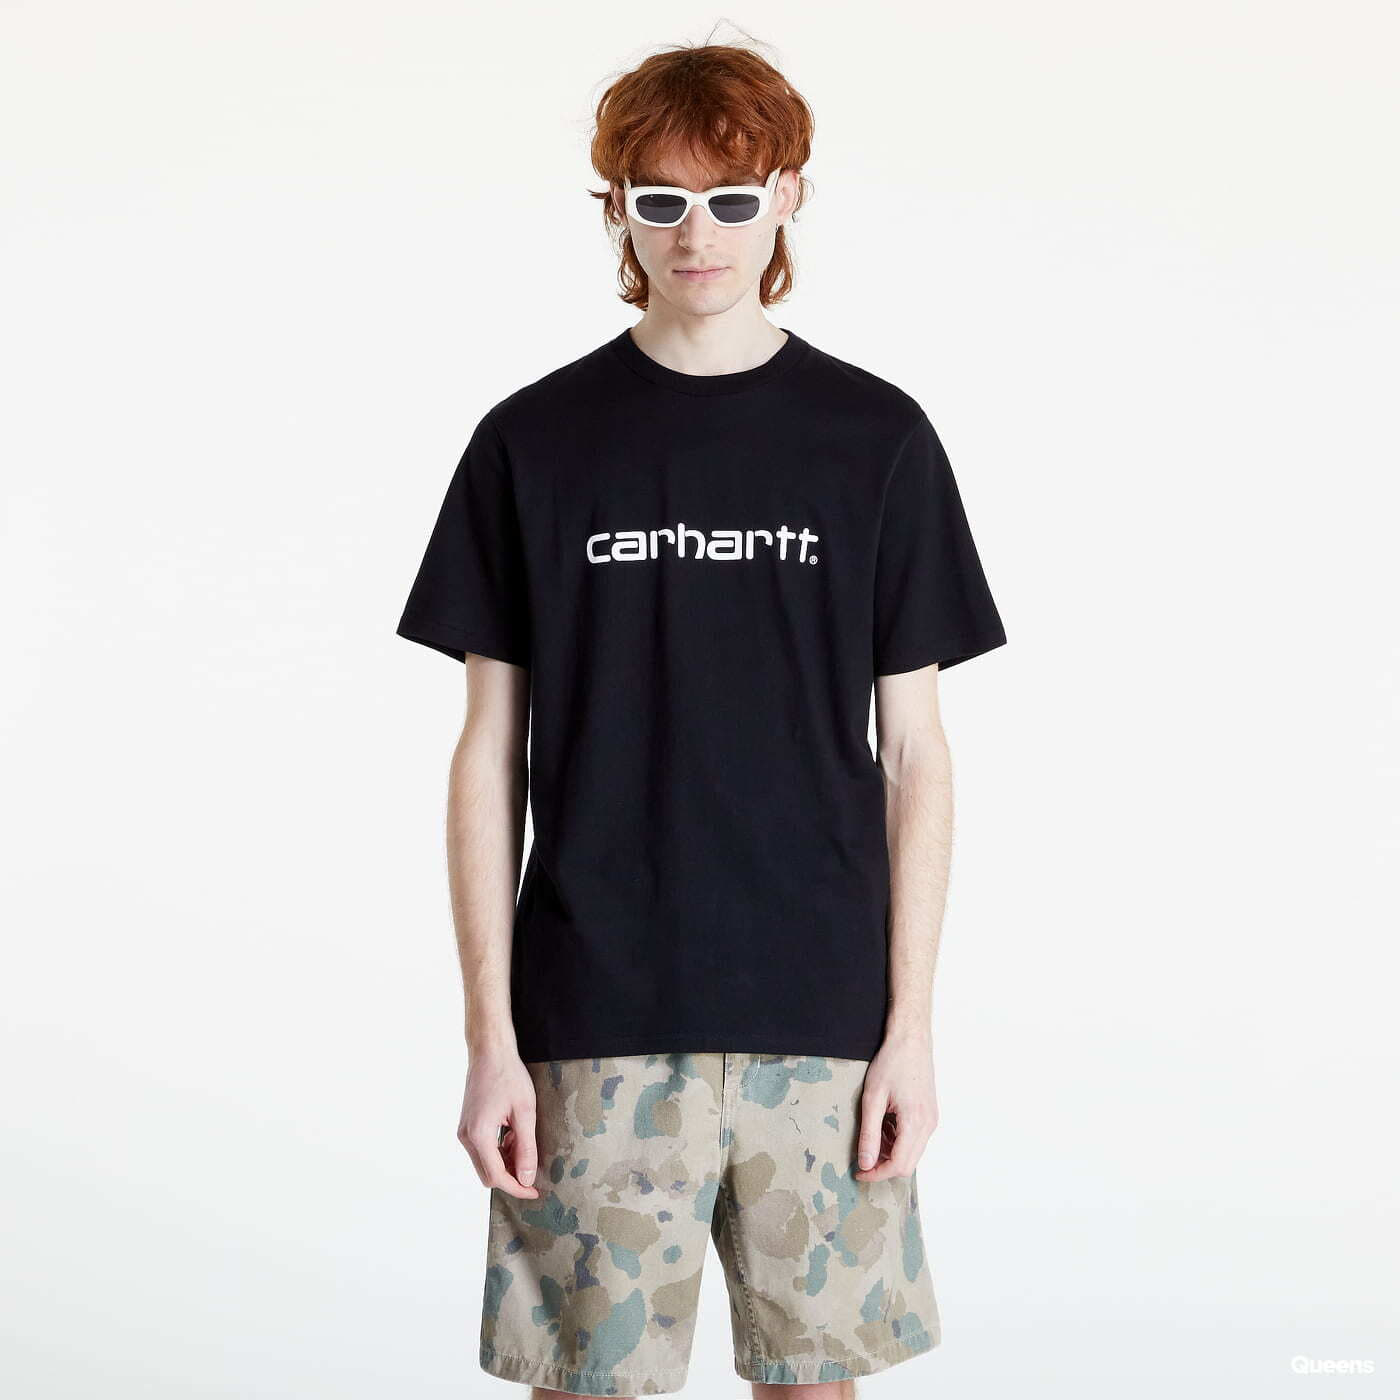 Trička Carhartt WIP S/S Script T-Shirt Black